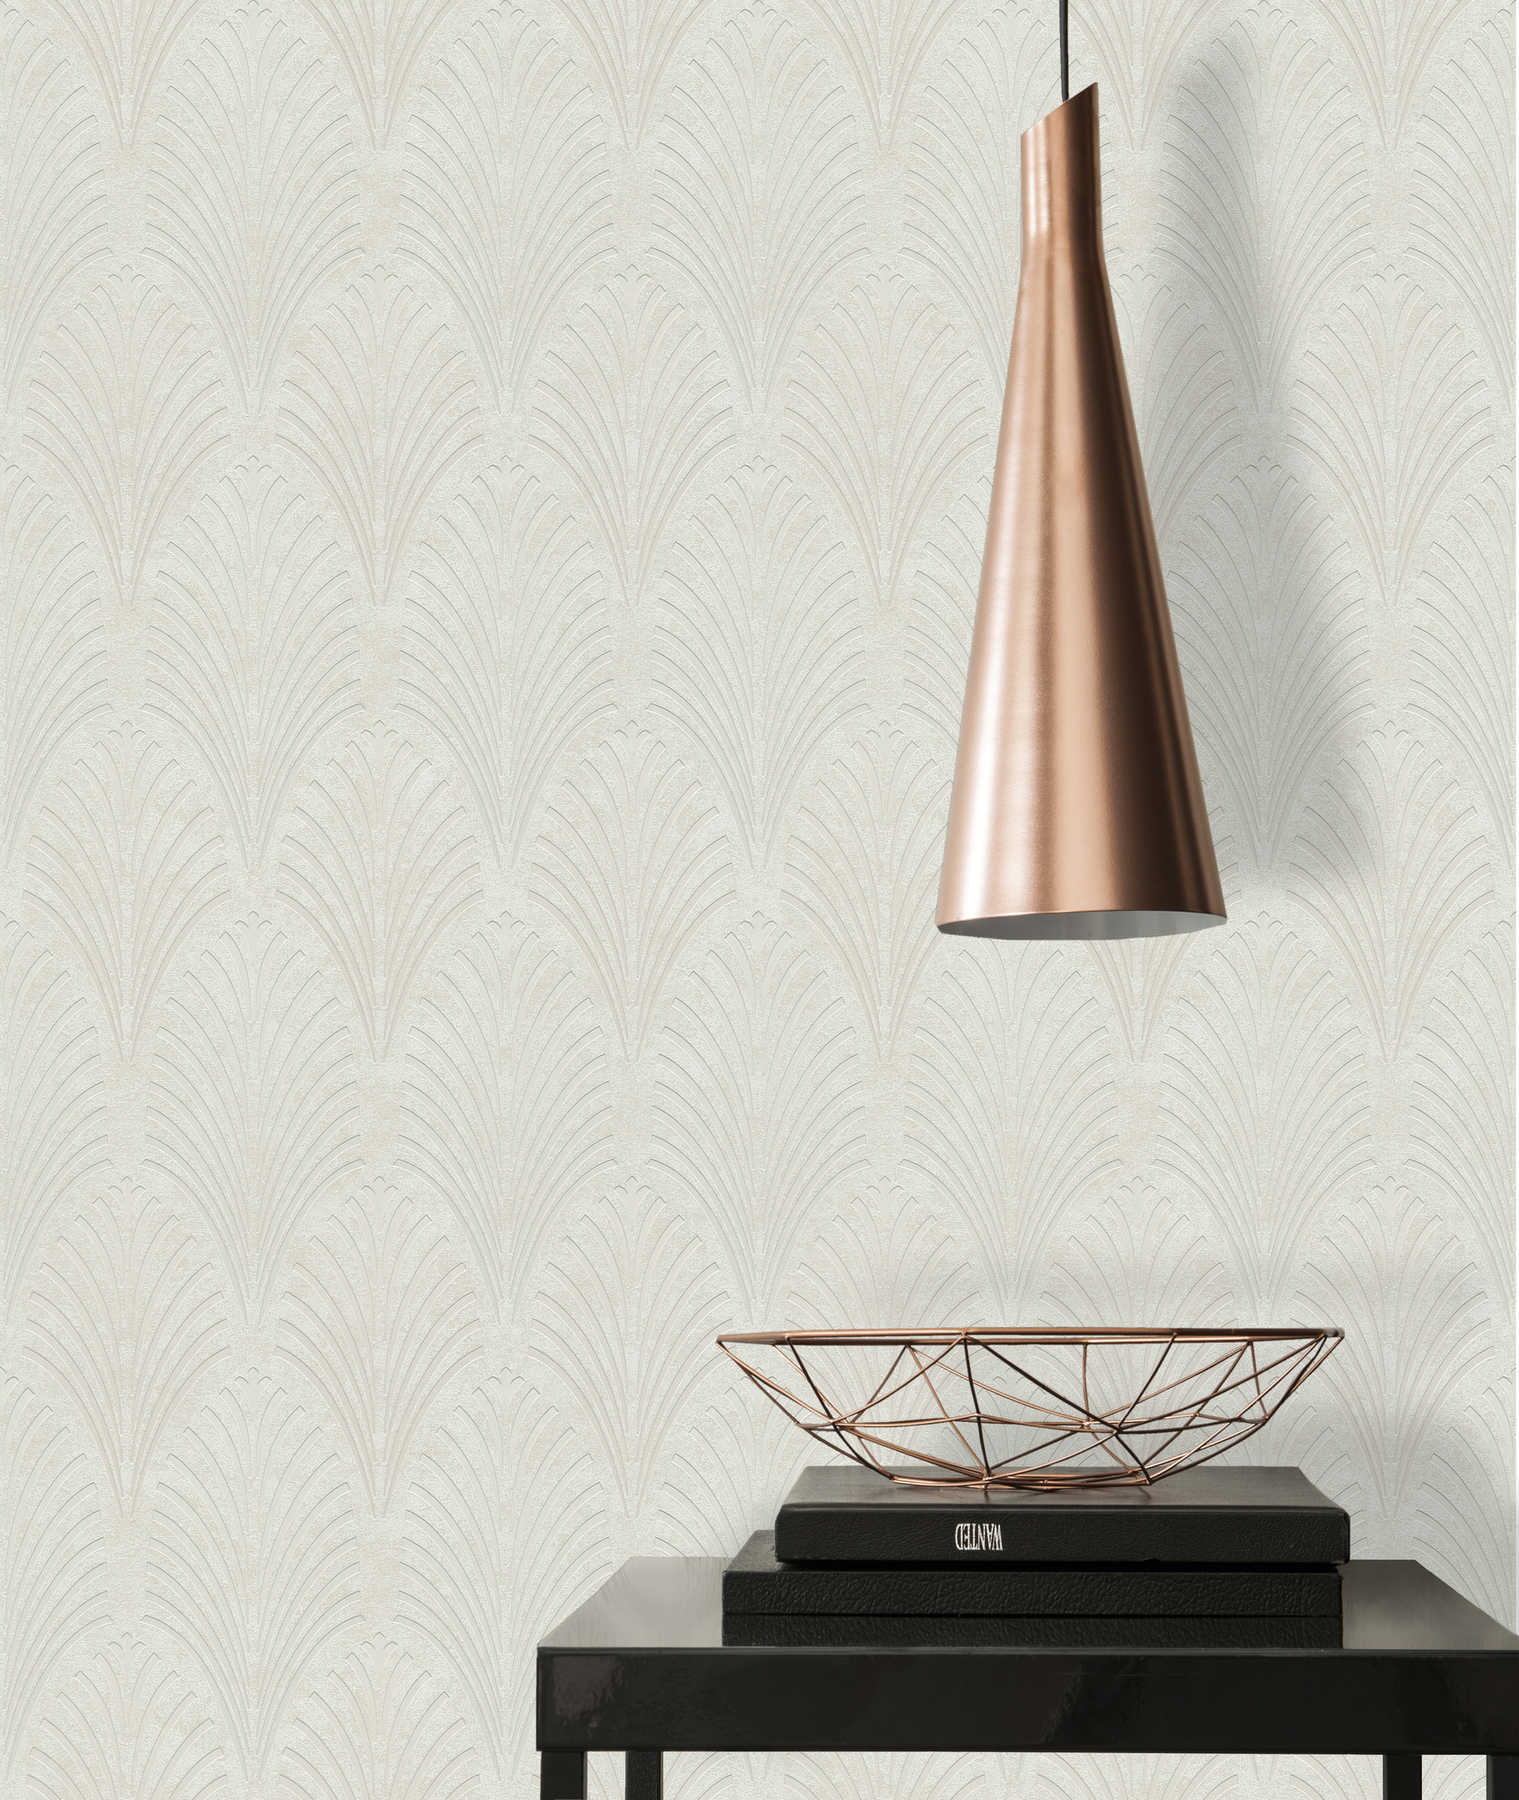             Retro-Tapete Art Deco Stil mit geometrischem Muster – Creme, Grau, Beige
        